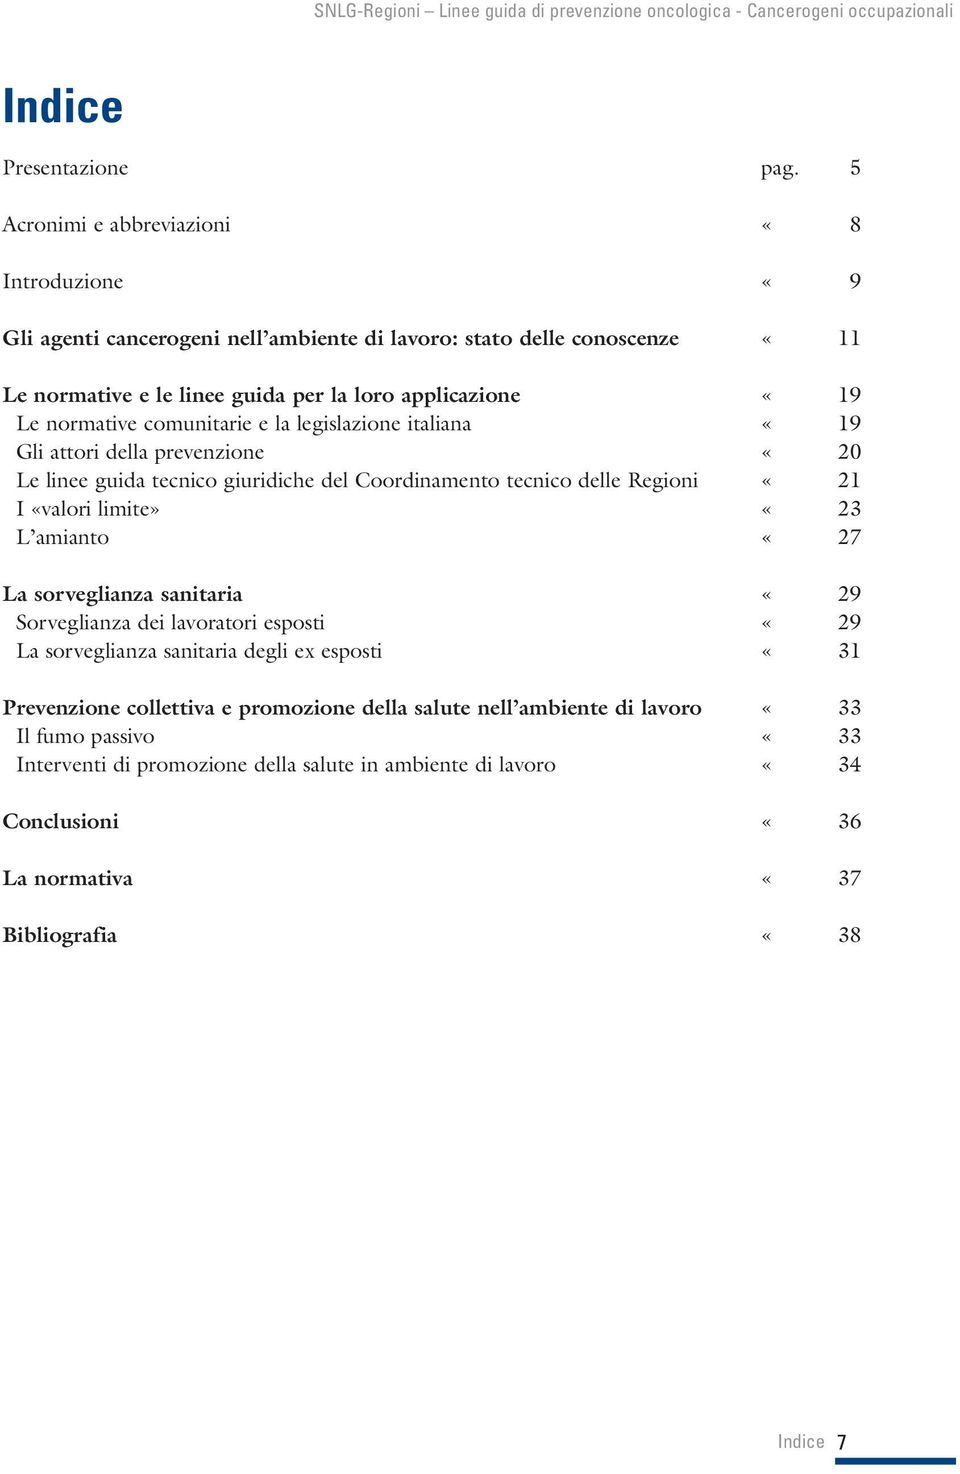 normative comunitarie e la legislazione italiana «19 Gli attori della prevenzione «20 Le linee guida tecnico giuridiche del Coordinamento tecnico delle Regioni «21 I «valori limite» «23